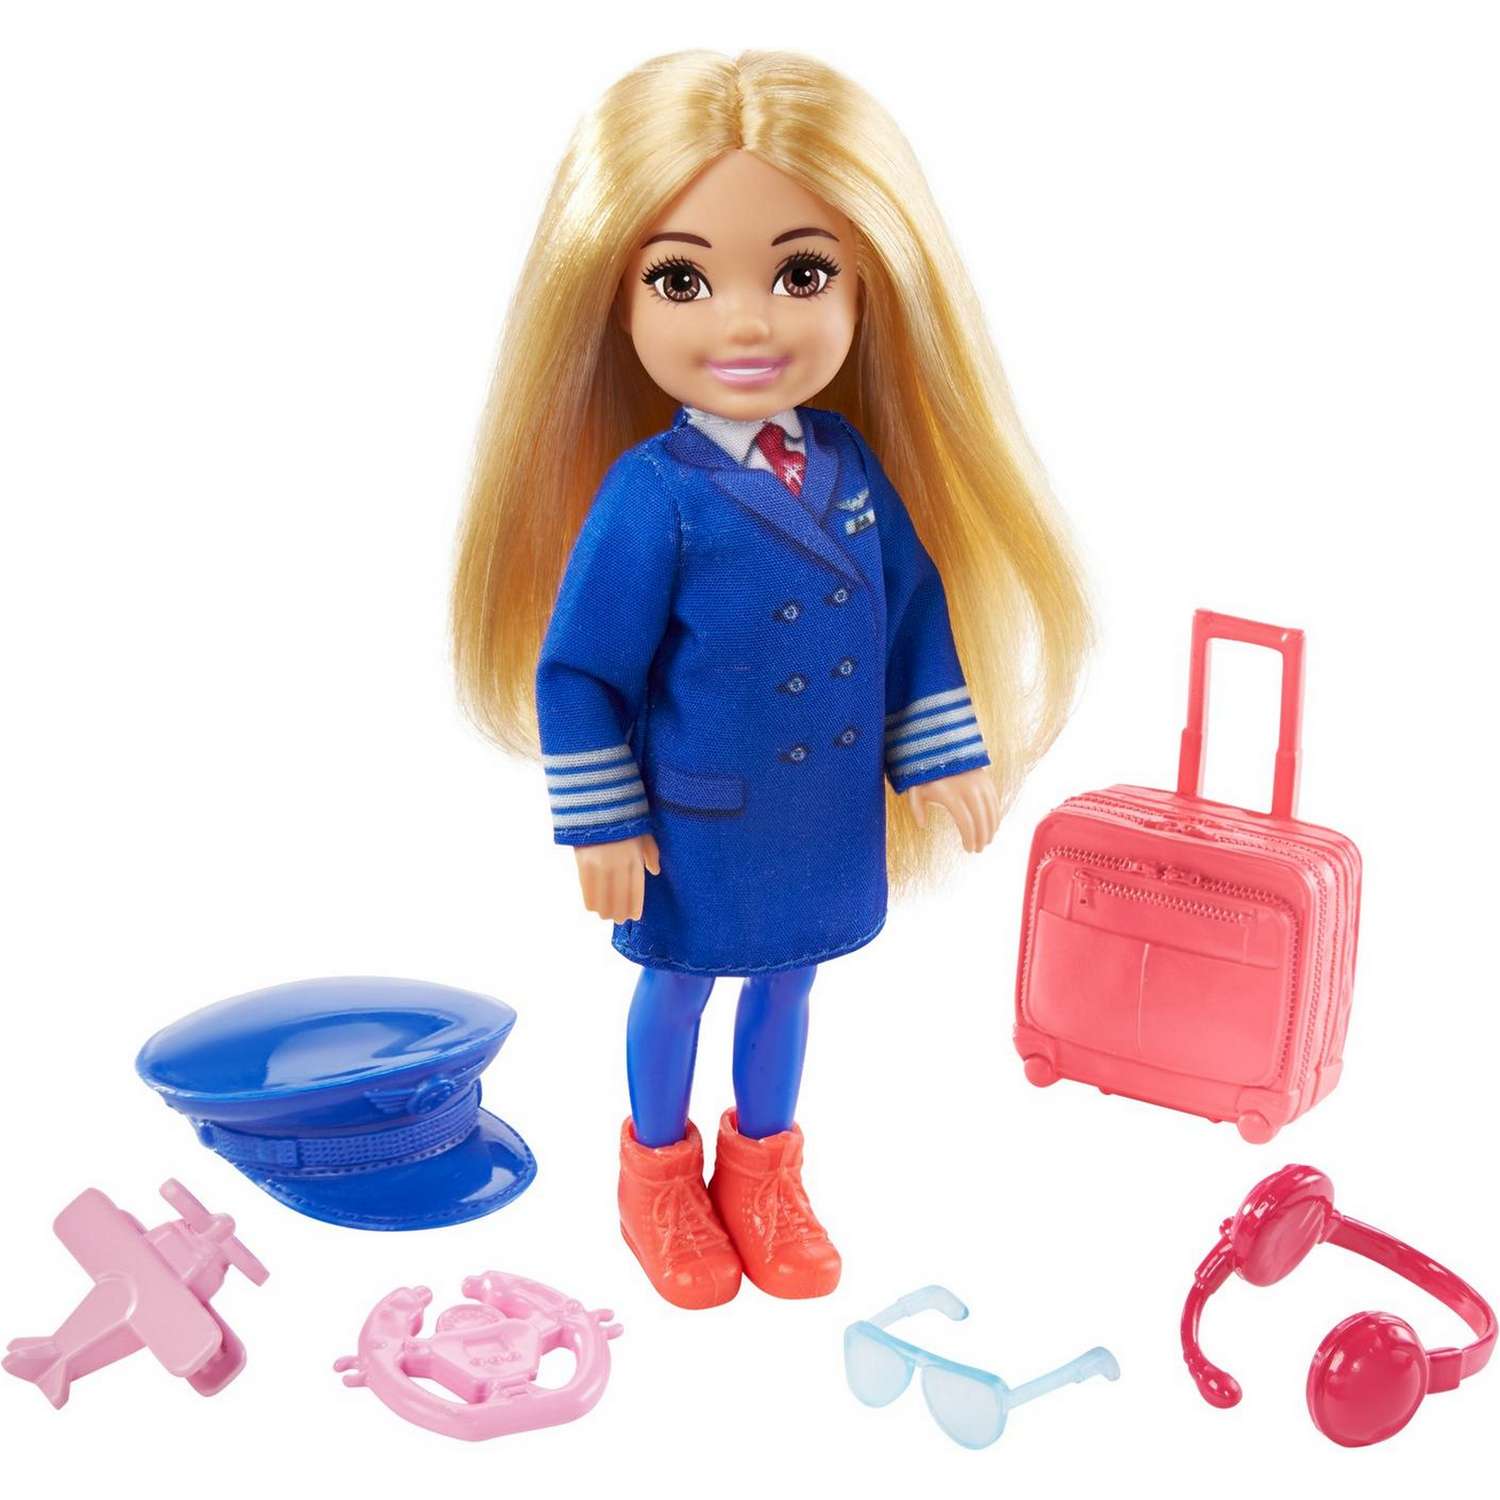 Набор Barbie Карьера Челси кукла+аксессуары в ассортименте GTN86 GTN86 - фото 4